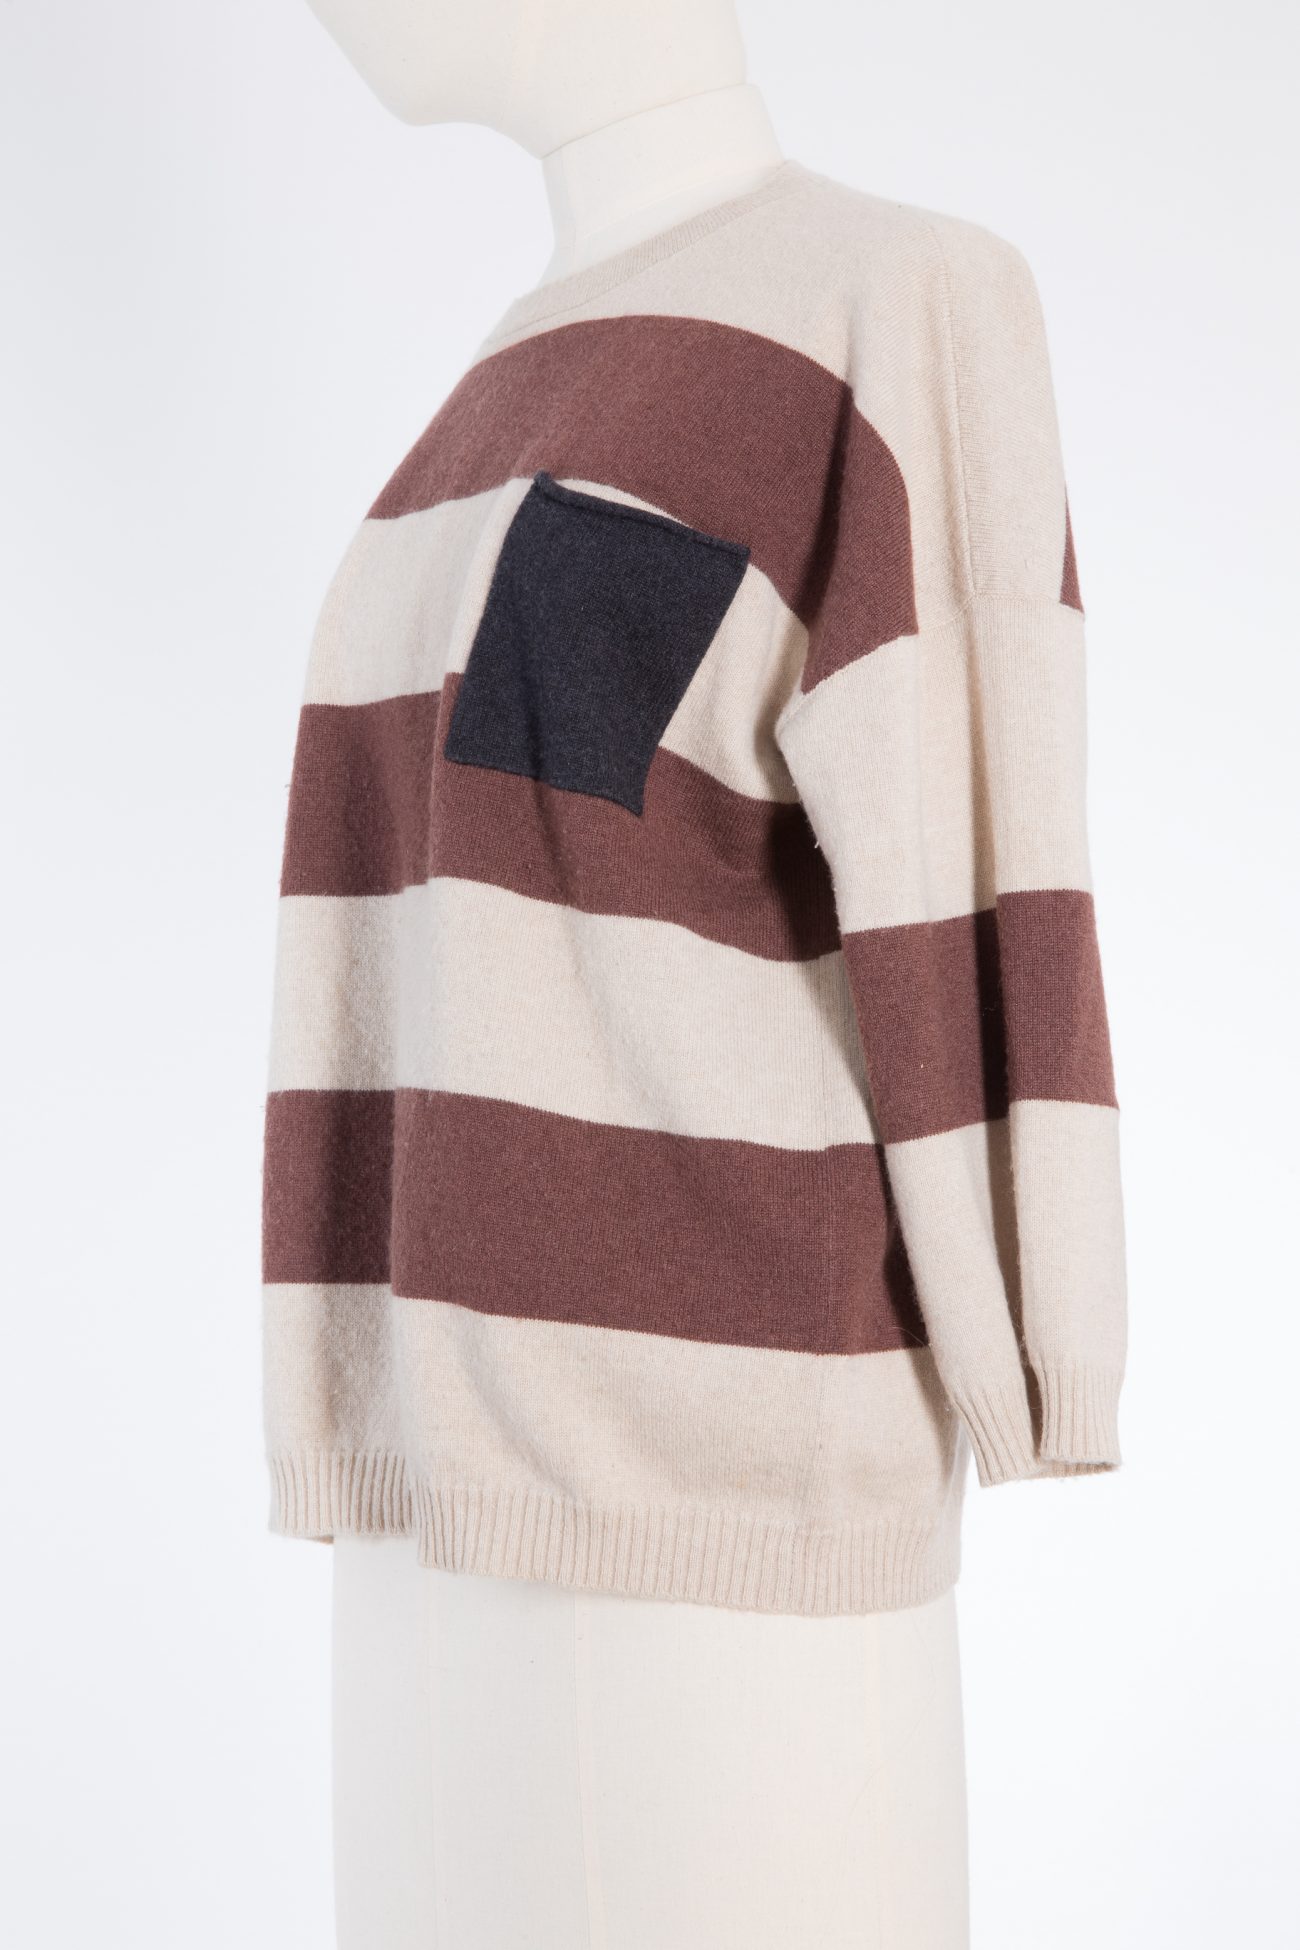 Brunello Cucinelli cashmere sweater